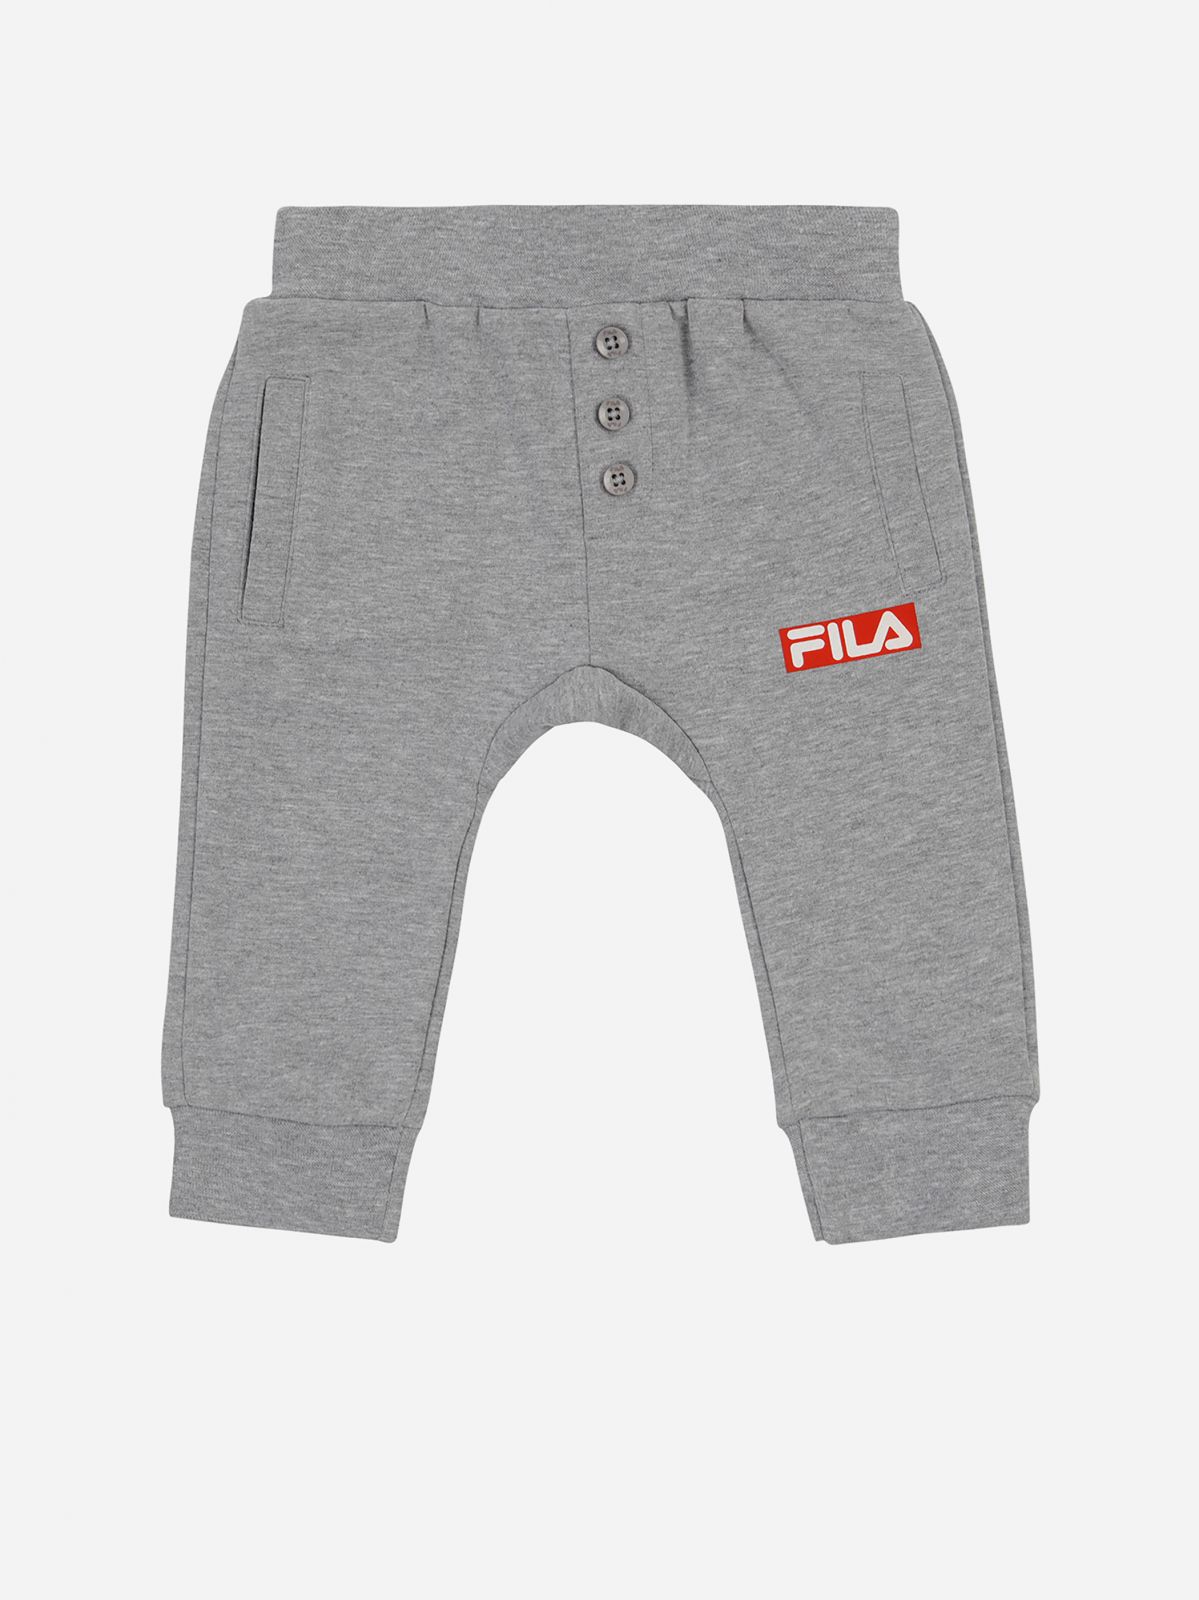  סט בגד גוף ומכנסיים עם לוגו / N.B-12M של FILA